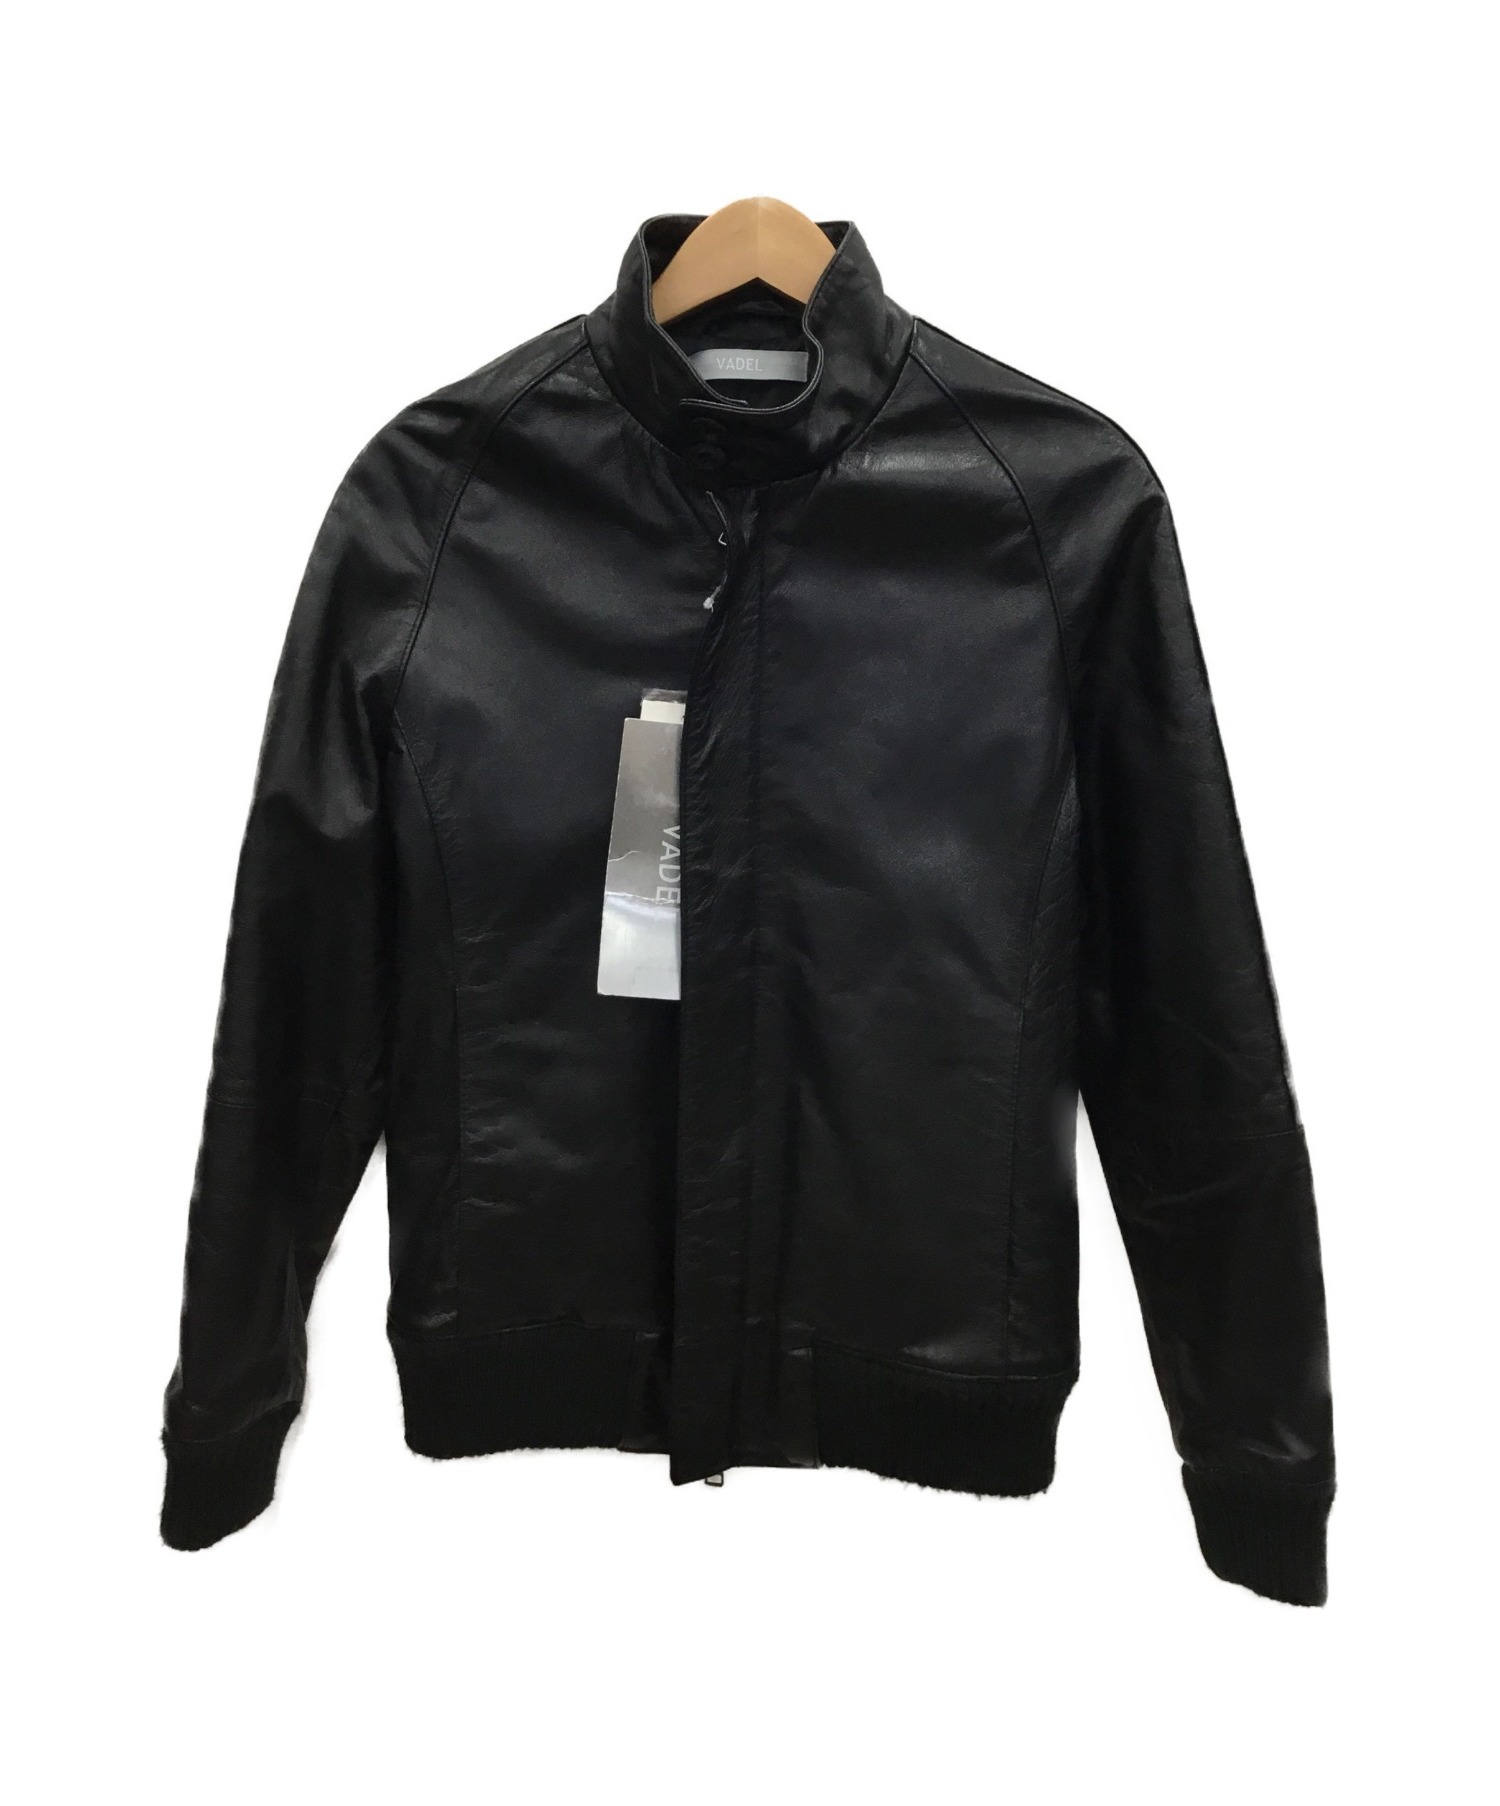 VADEL (バデル) レザージャケット ブラック サイズ:S 秋冬物